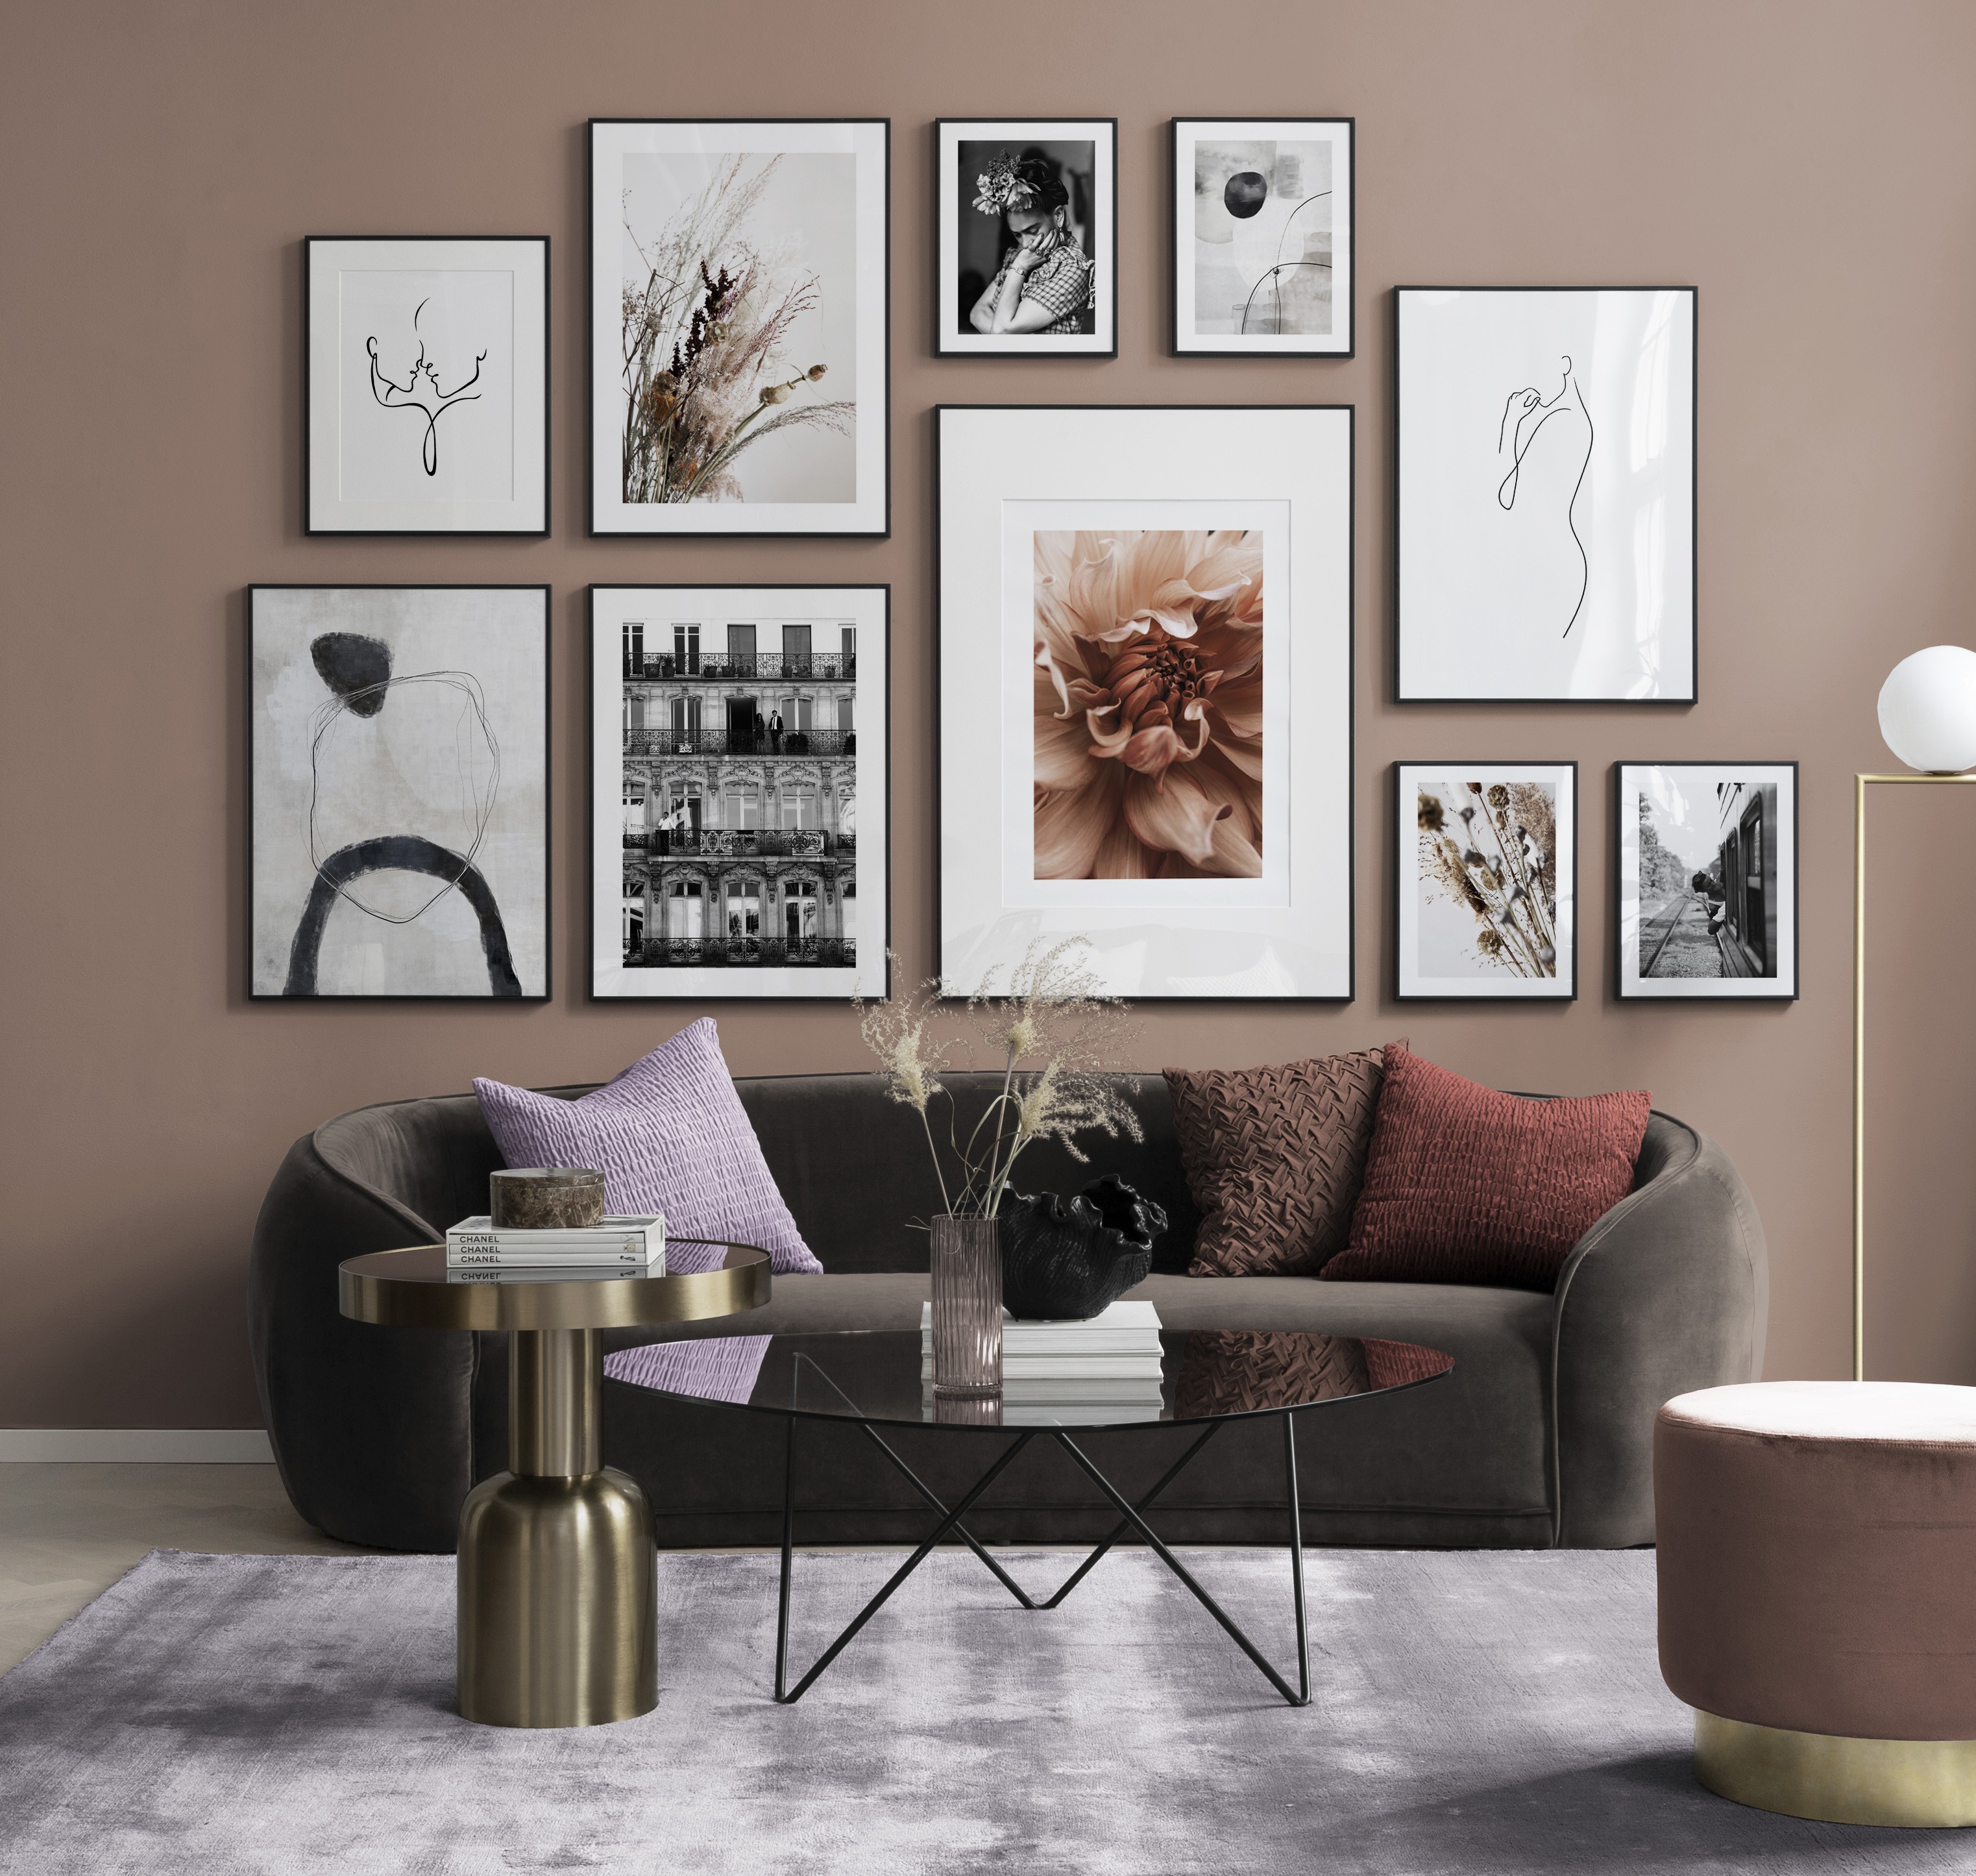 Seite 2 - Inspiration für schöne Wohnzimmer Bilderwand mit Postern